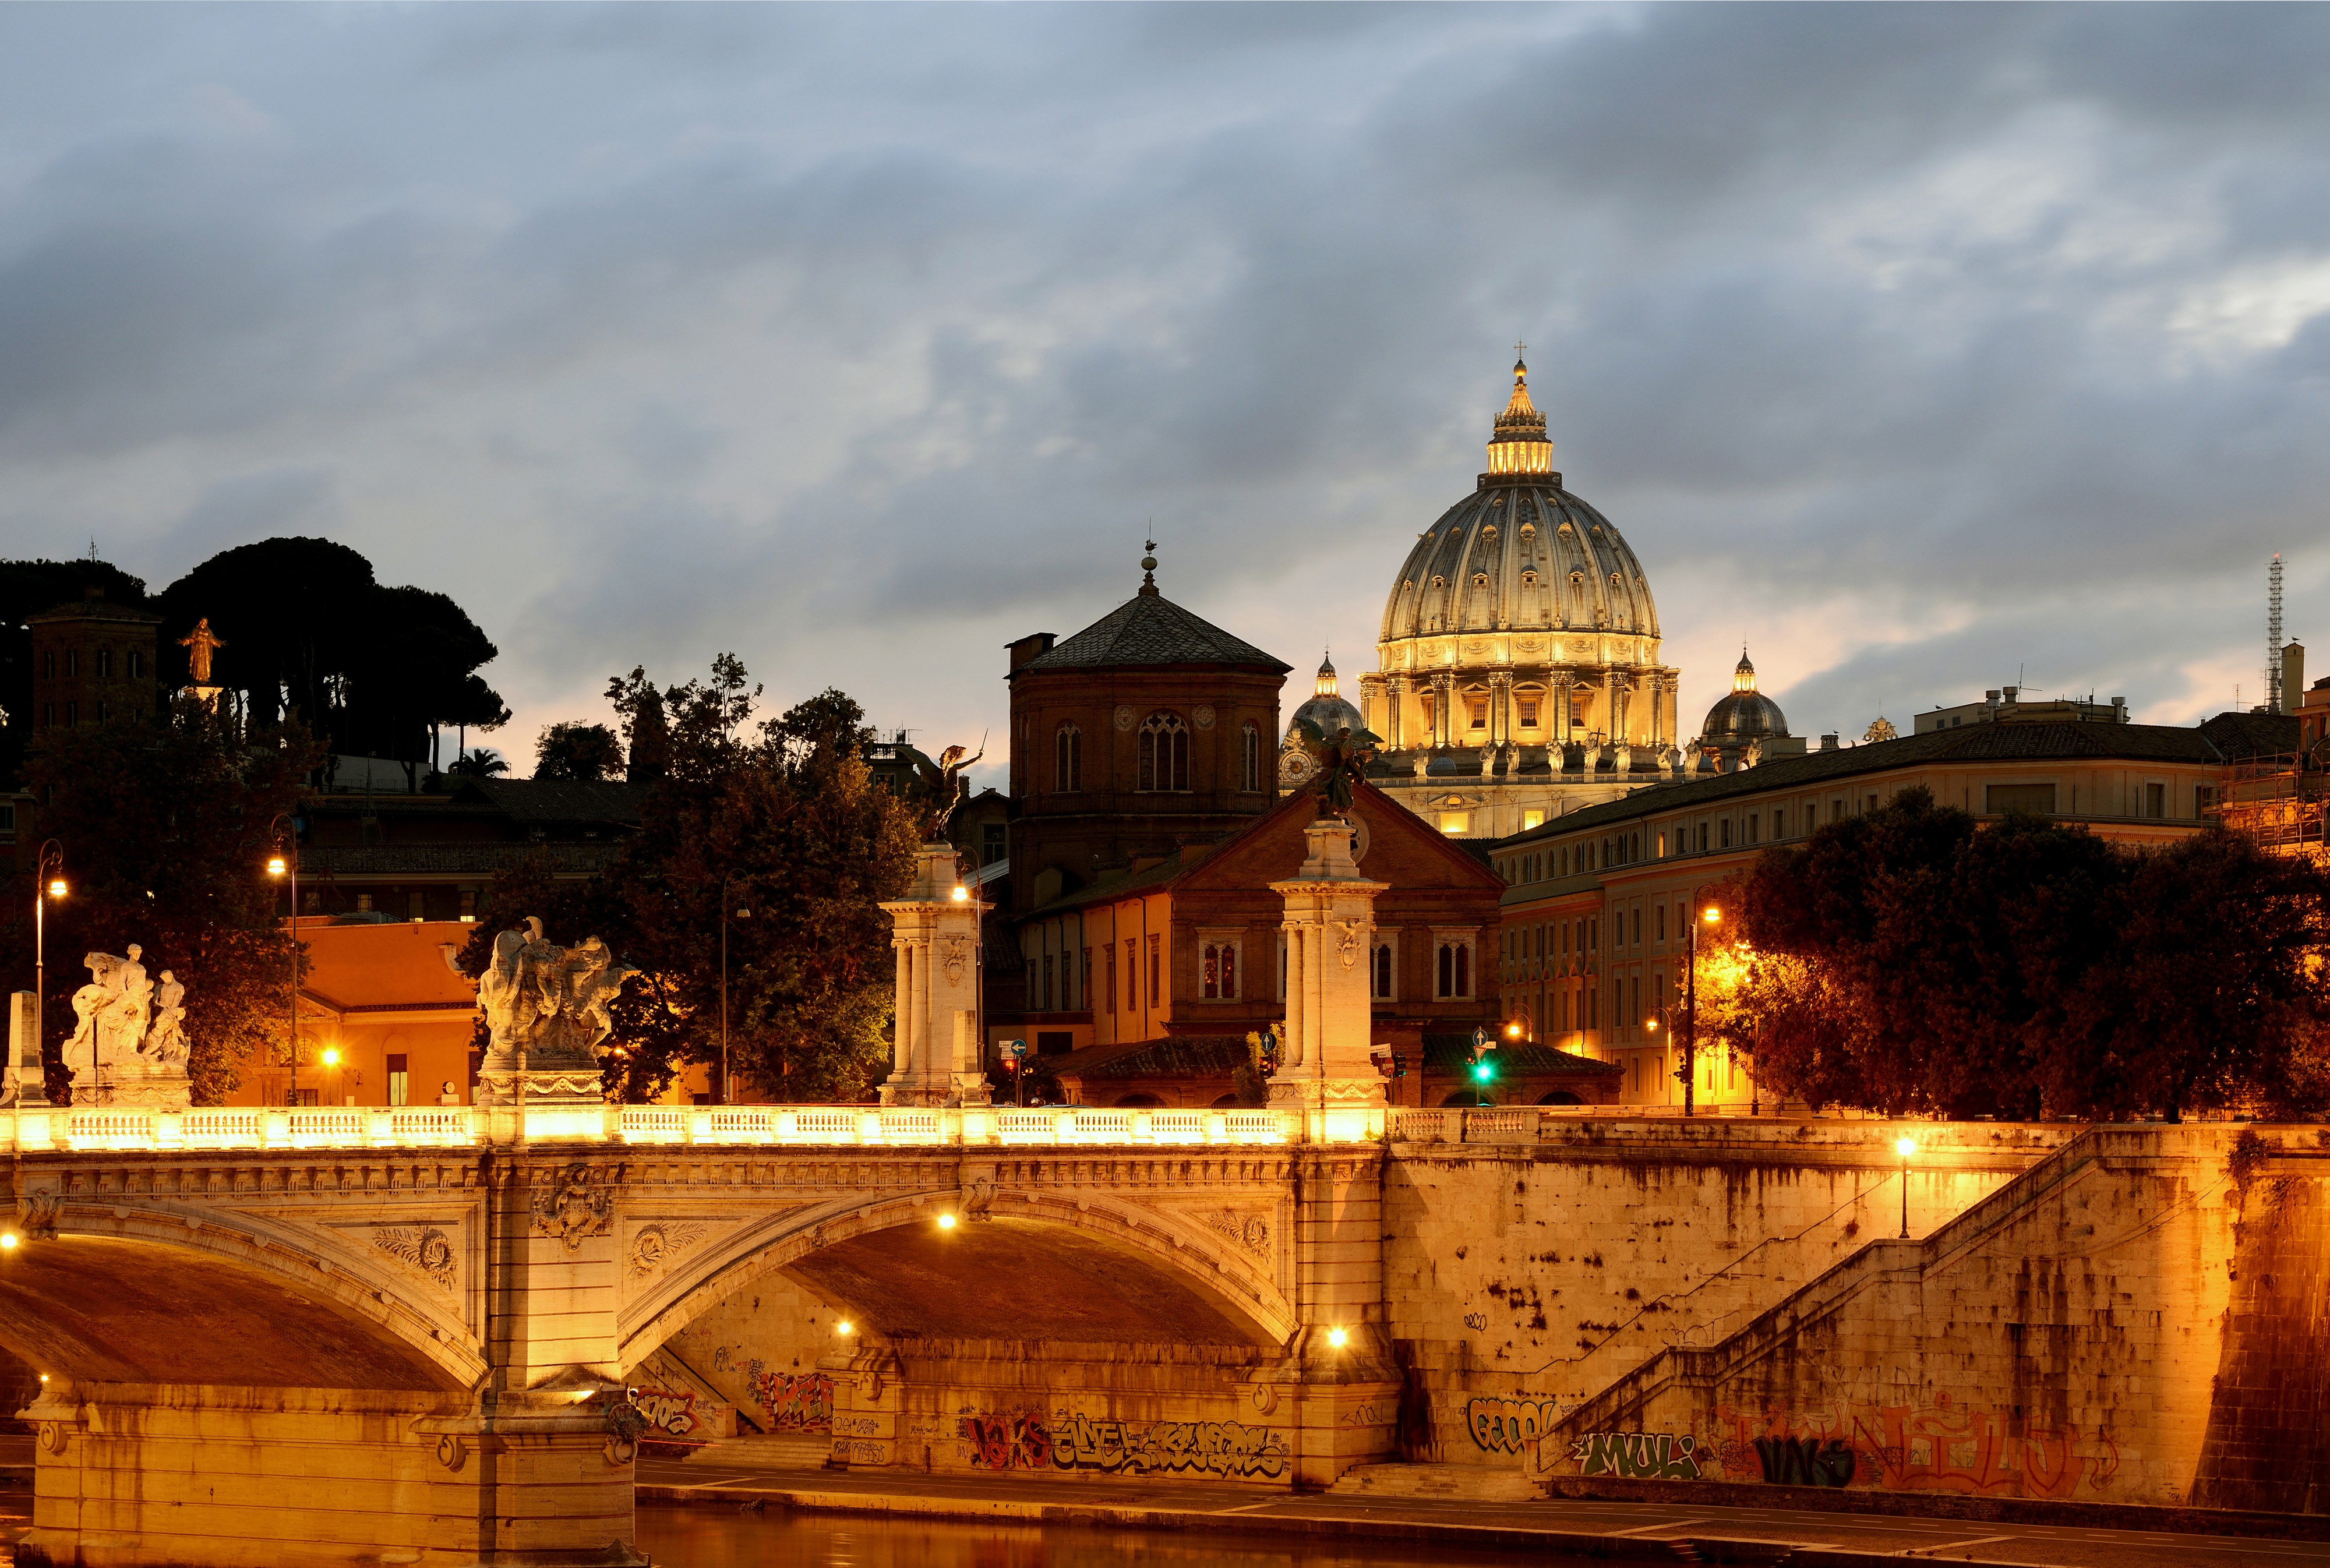 Bridge Vittorio Emanuele II at sunset